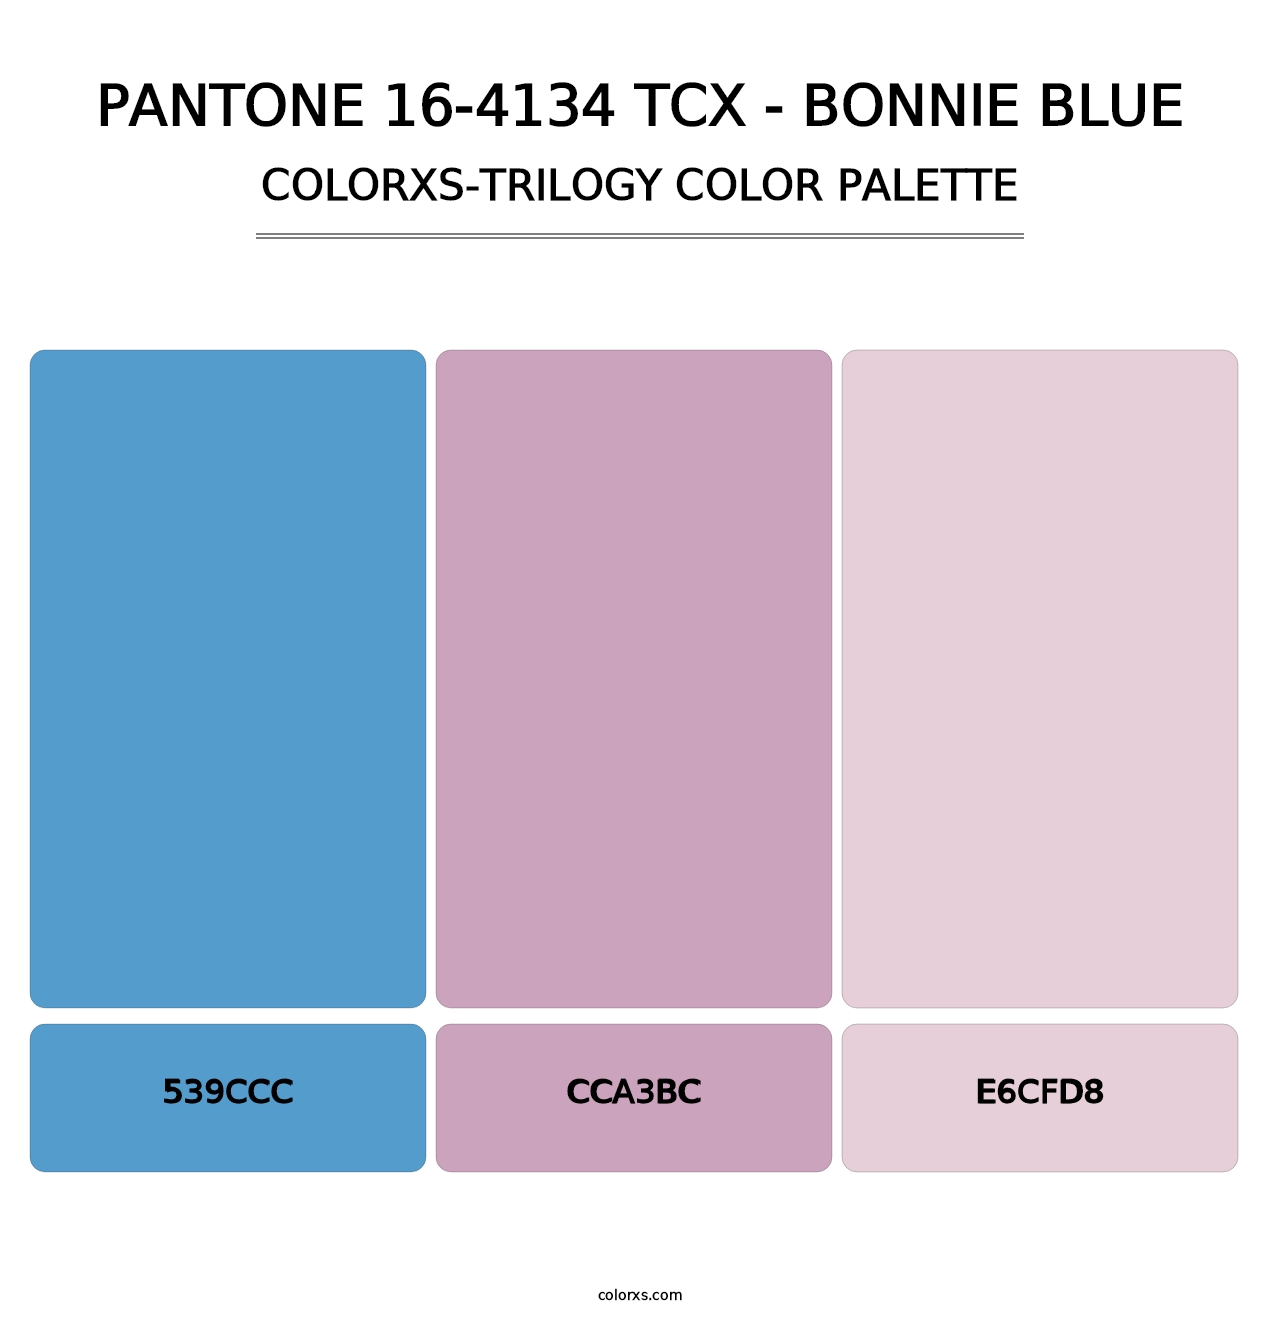 PANTONE 16-4134 TCX - Bonnie Blue - Colorxs Trilogy Palette